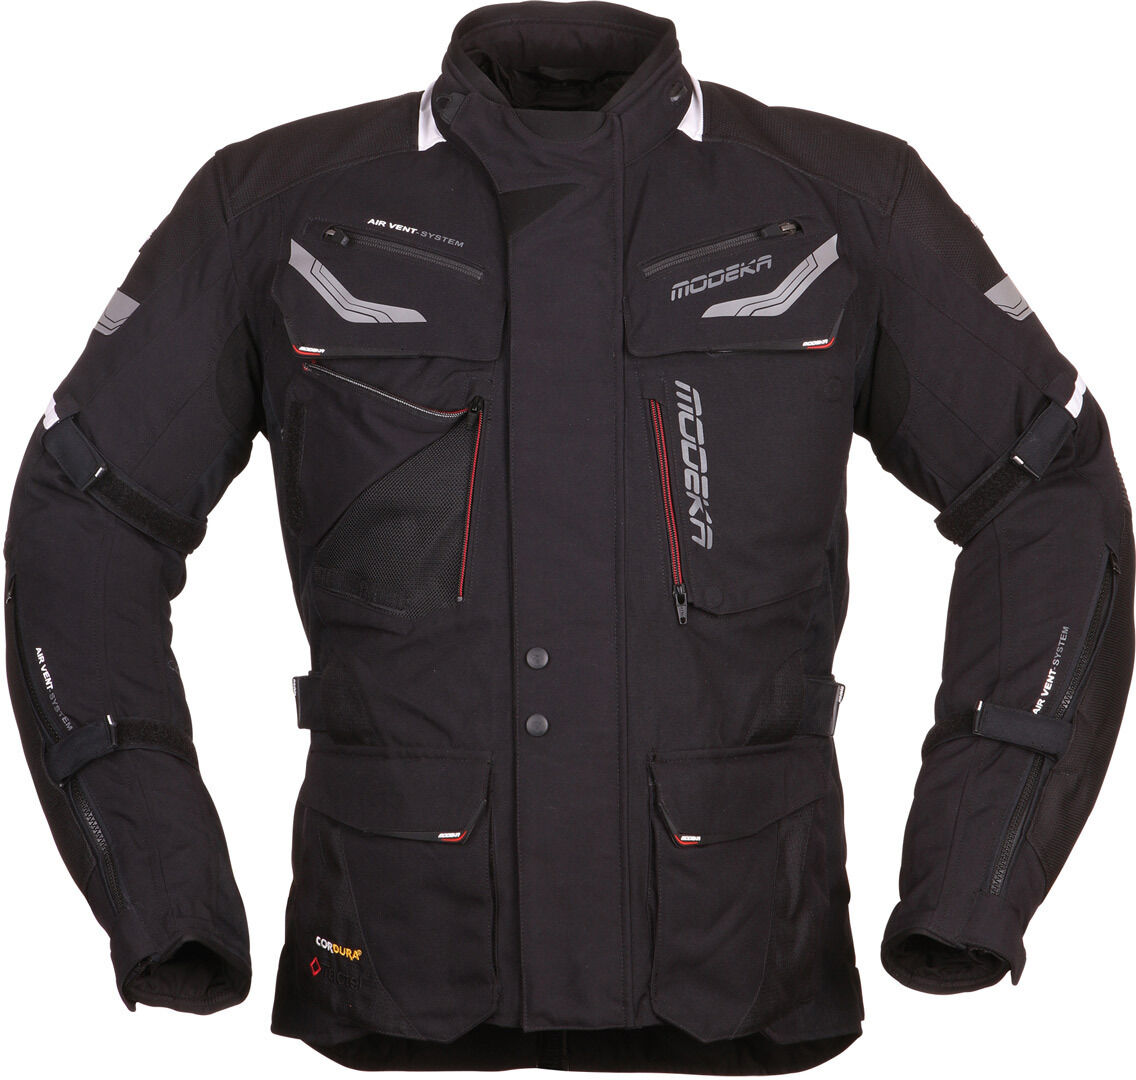 Modeka Chekker Motorcycle Textile Jacket  - Black